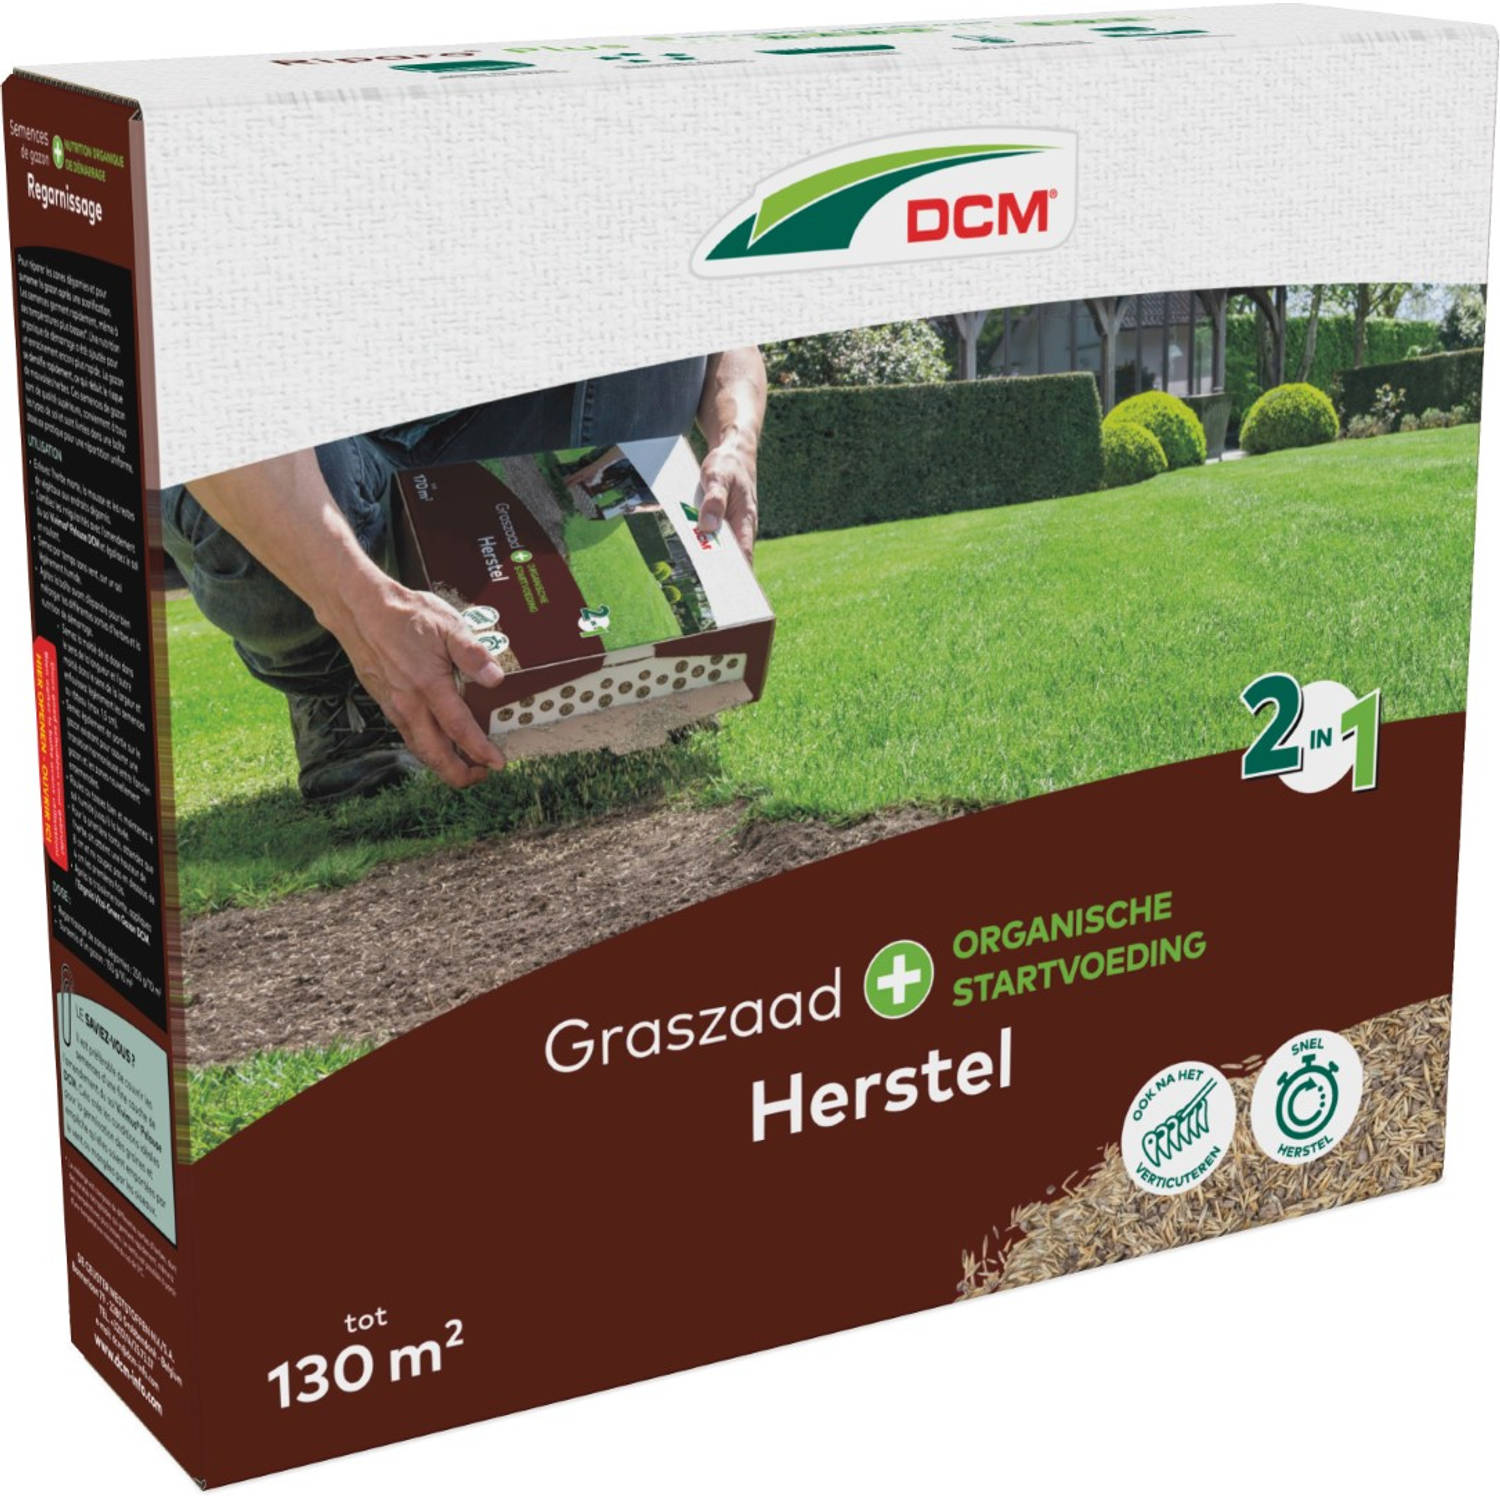 DCM - Graszaad 2-in-1 Herstel 130 M2 (1,95 kg)